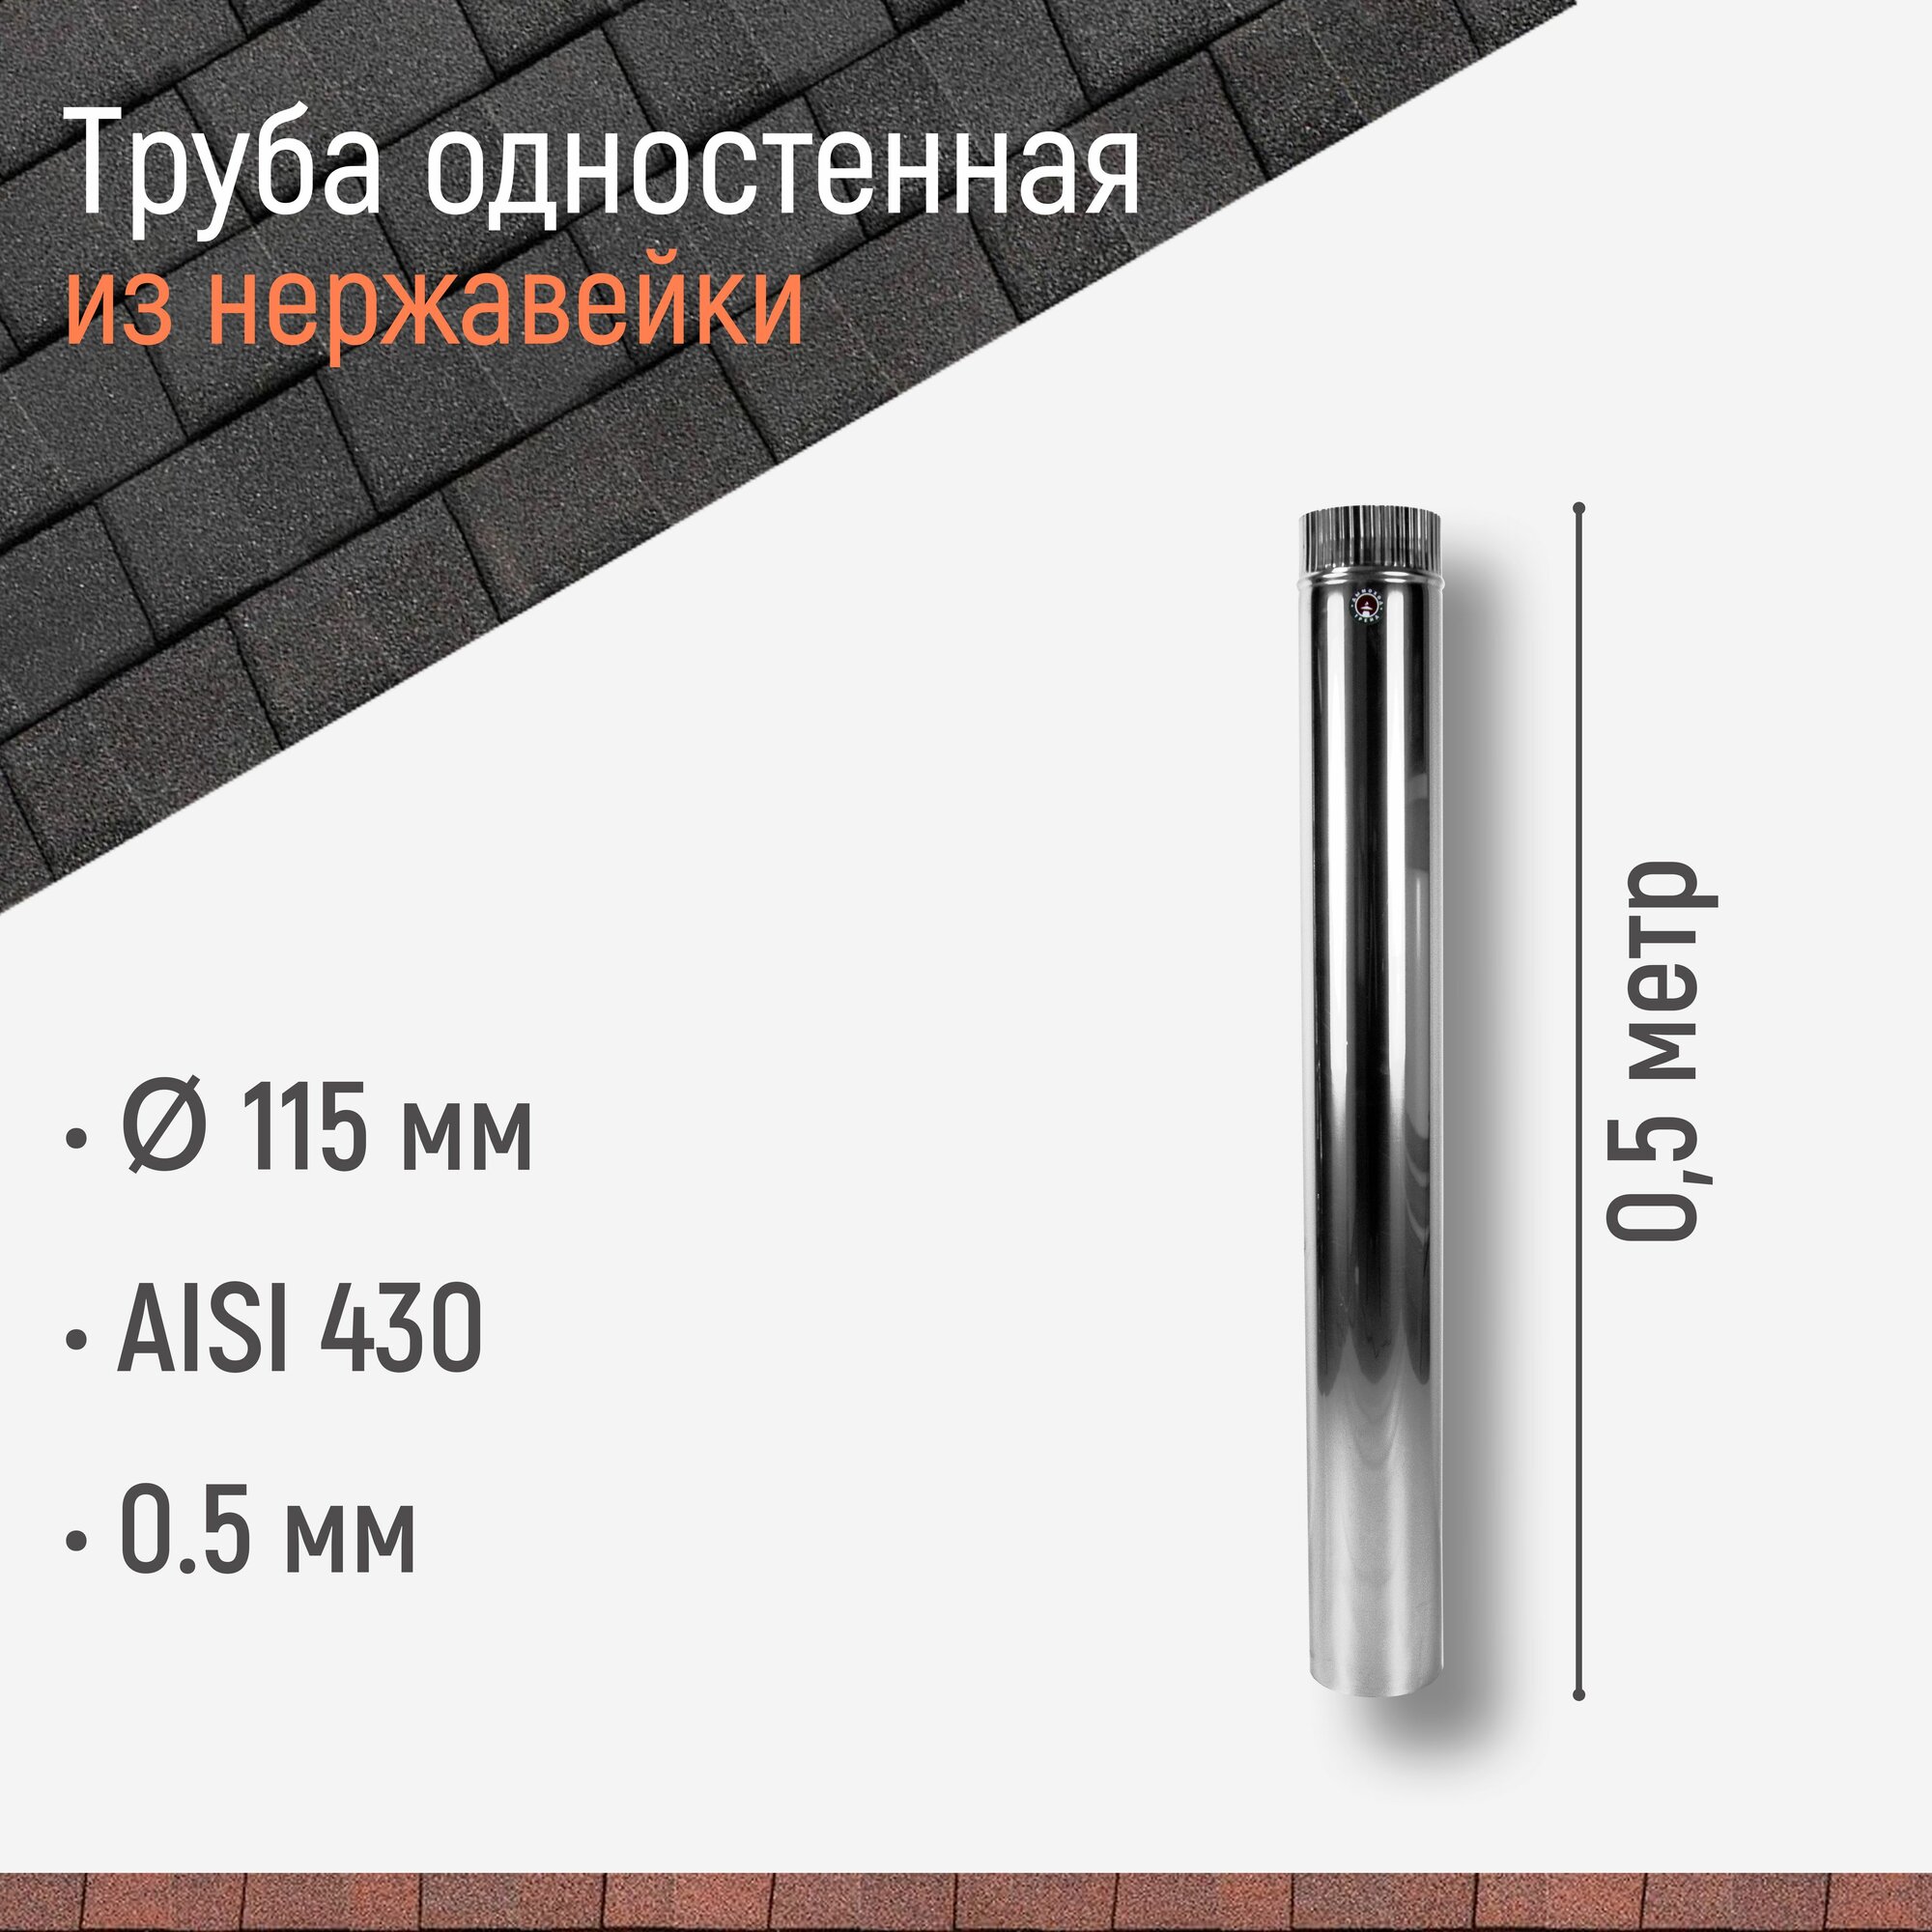 Труба одностенная для дымохода 0.5 м D 115 мм из нержавейки AISI 430 толщиной 0.5 мм